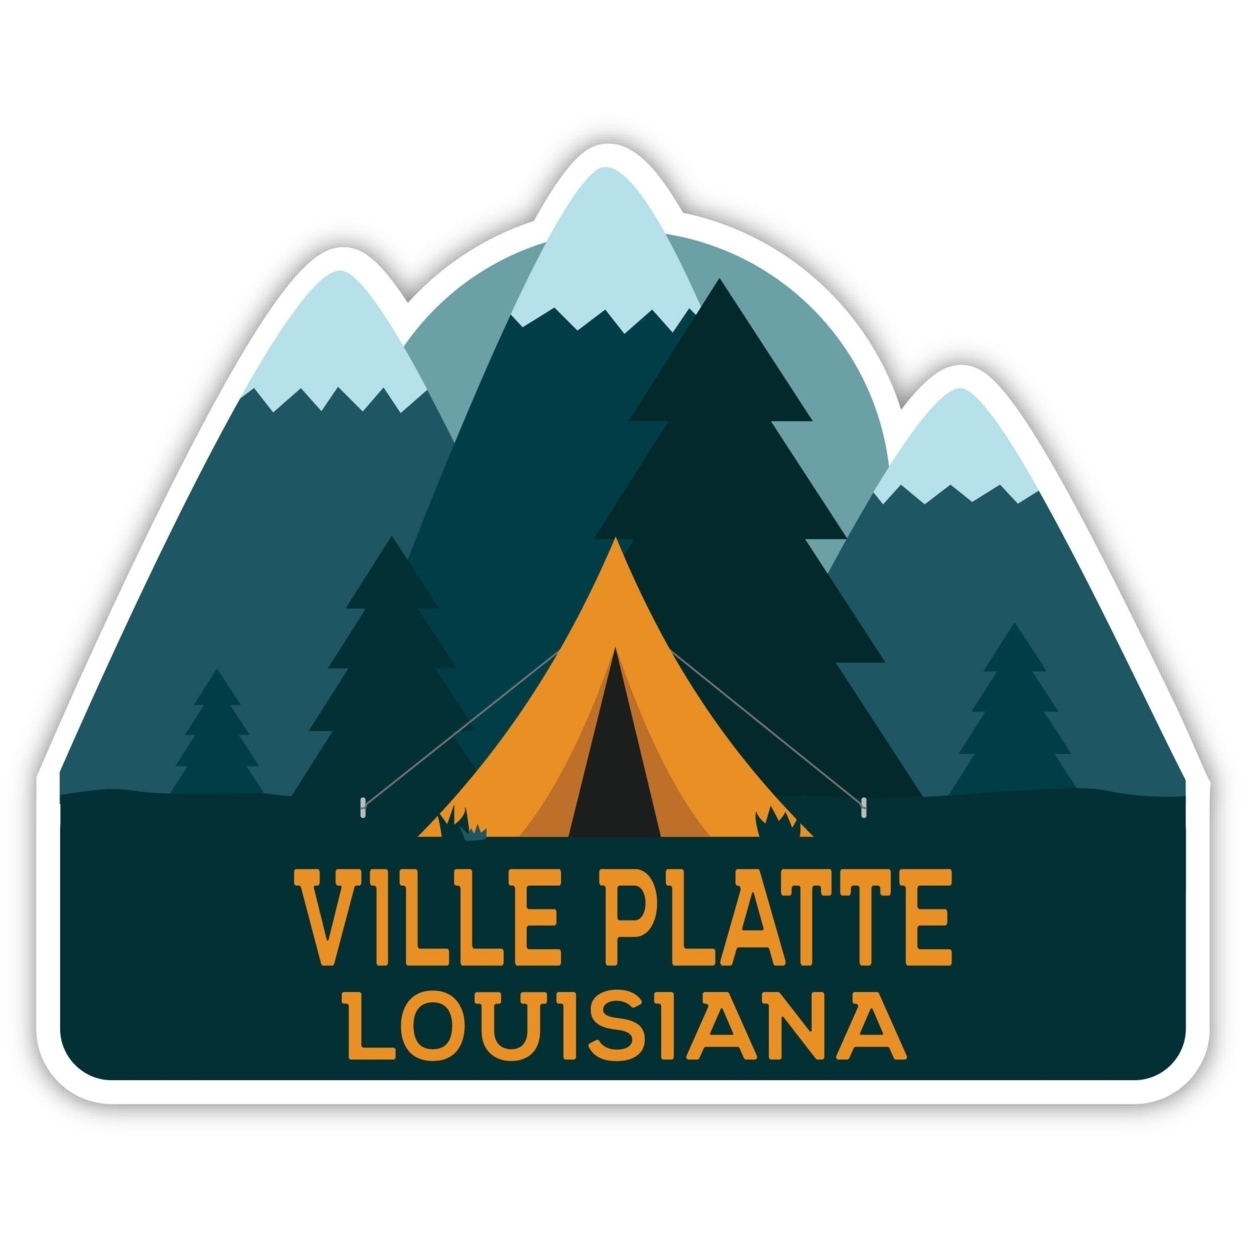 Ville Platte Louisiana Souvenir Decorative Stickers (Choose Theme And Size) - Single Unit, 2-Inch, Tent